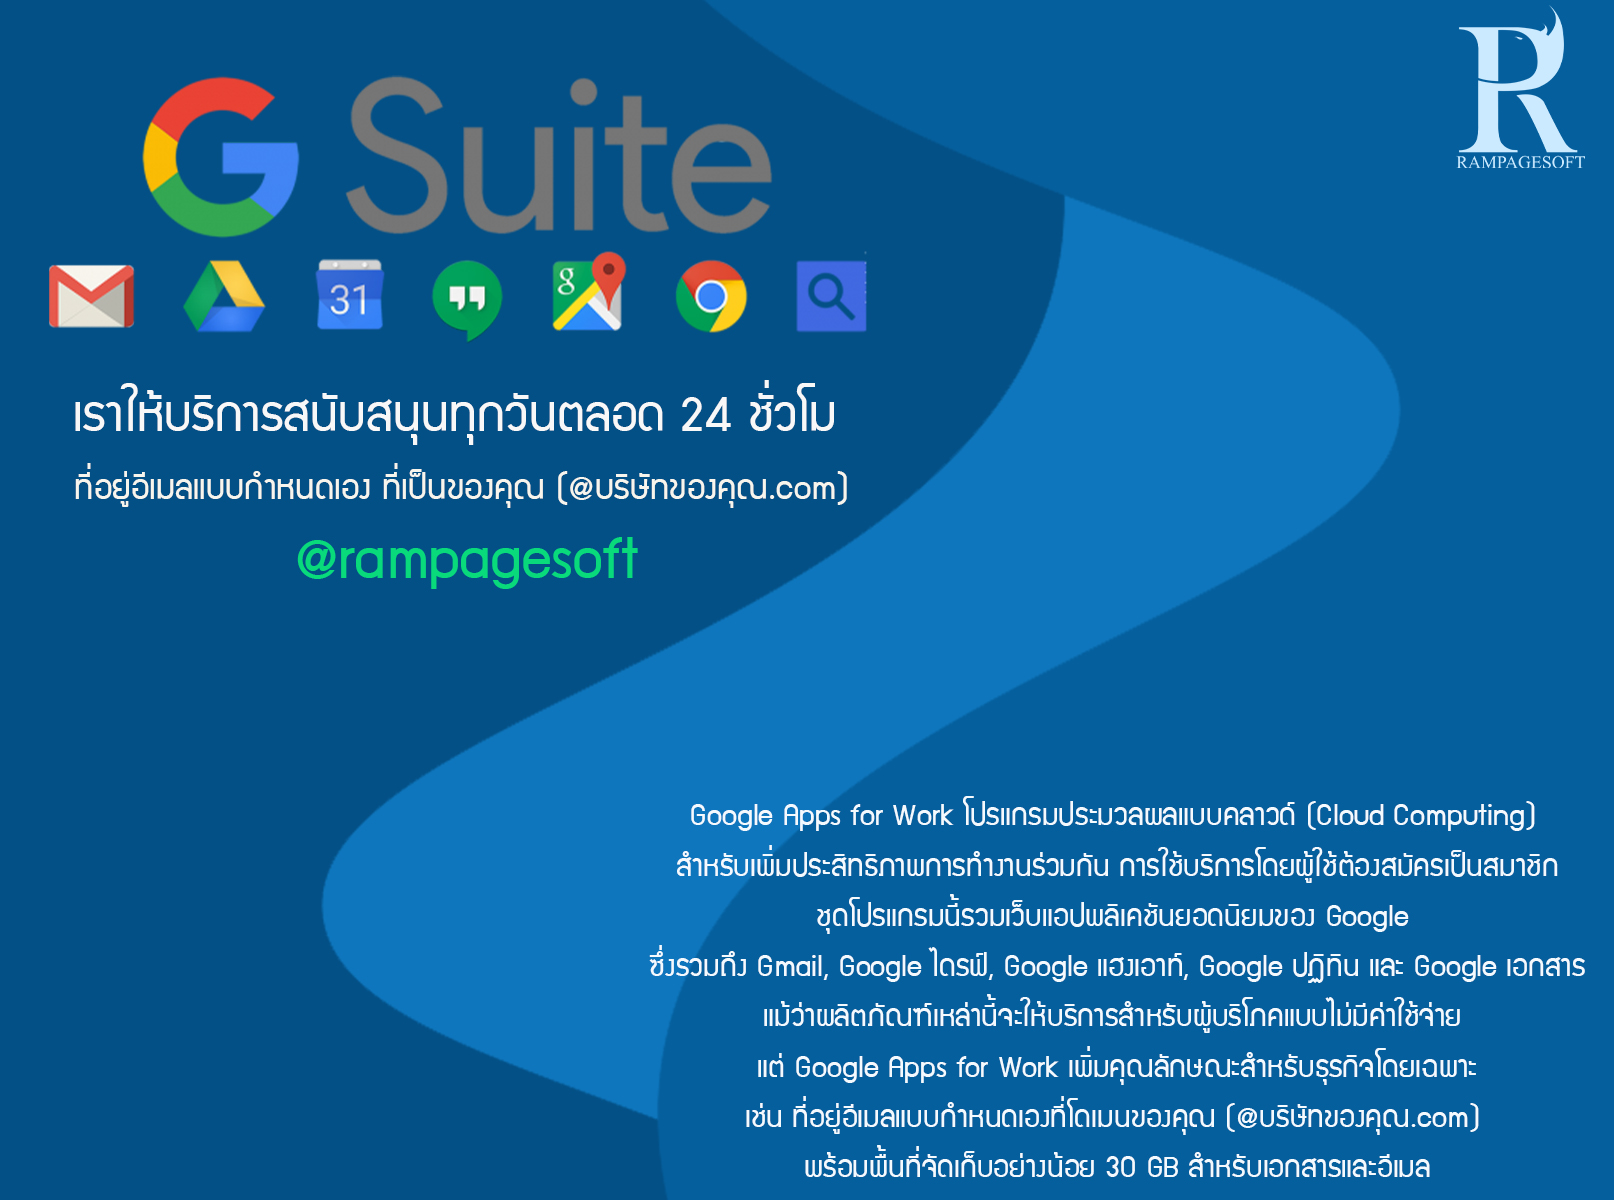 G-Suite ประกอบด้วยอีเมลธุรกิจของ Gmail, การพิมพ์งานด้วย Google เอกสาร | TTT-WEBSITE รับทําเว็บไซต์ เว็บขยายสายงาน